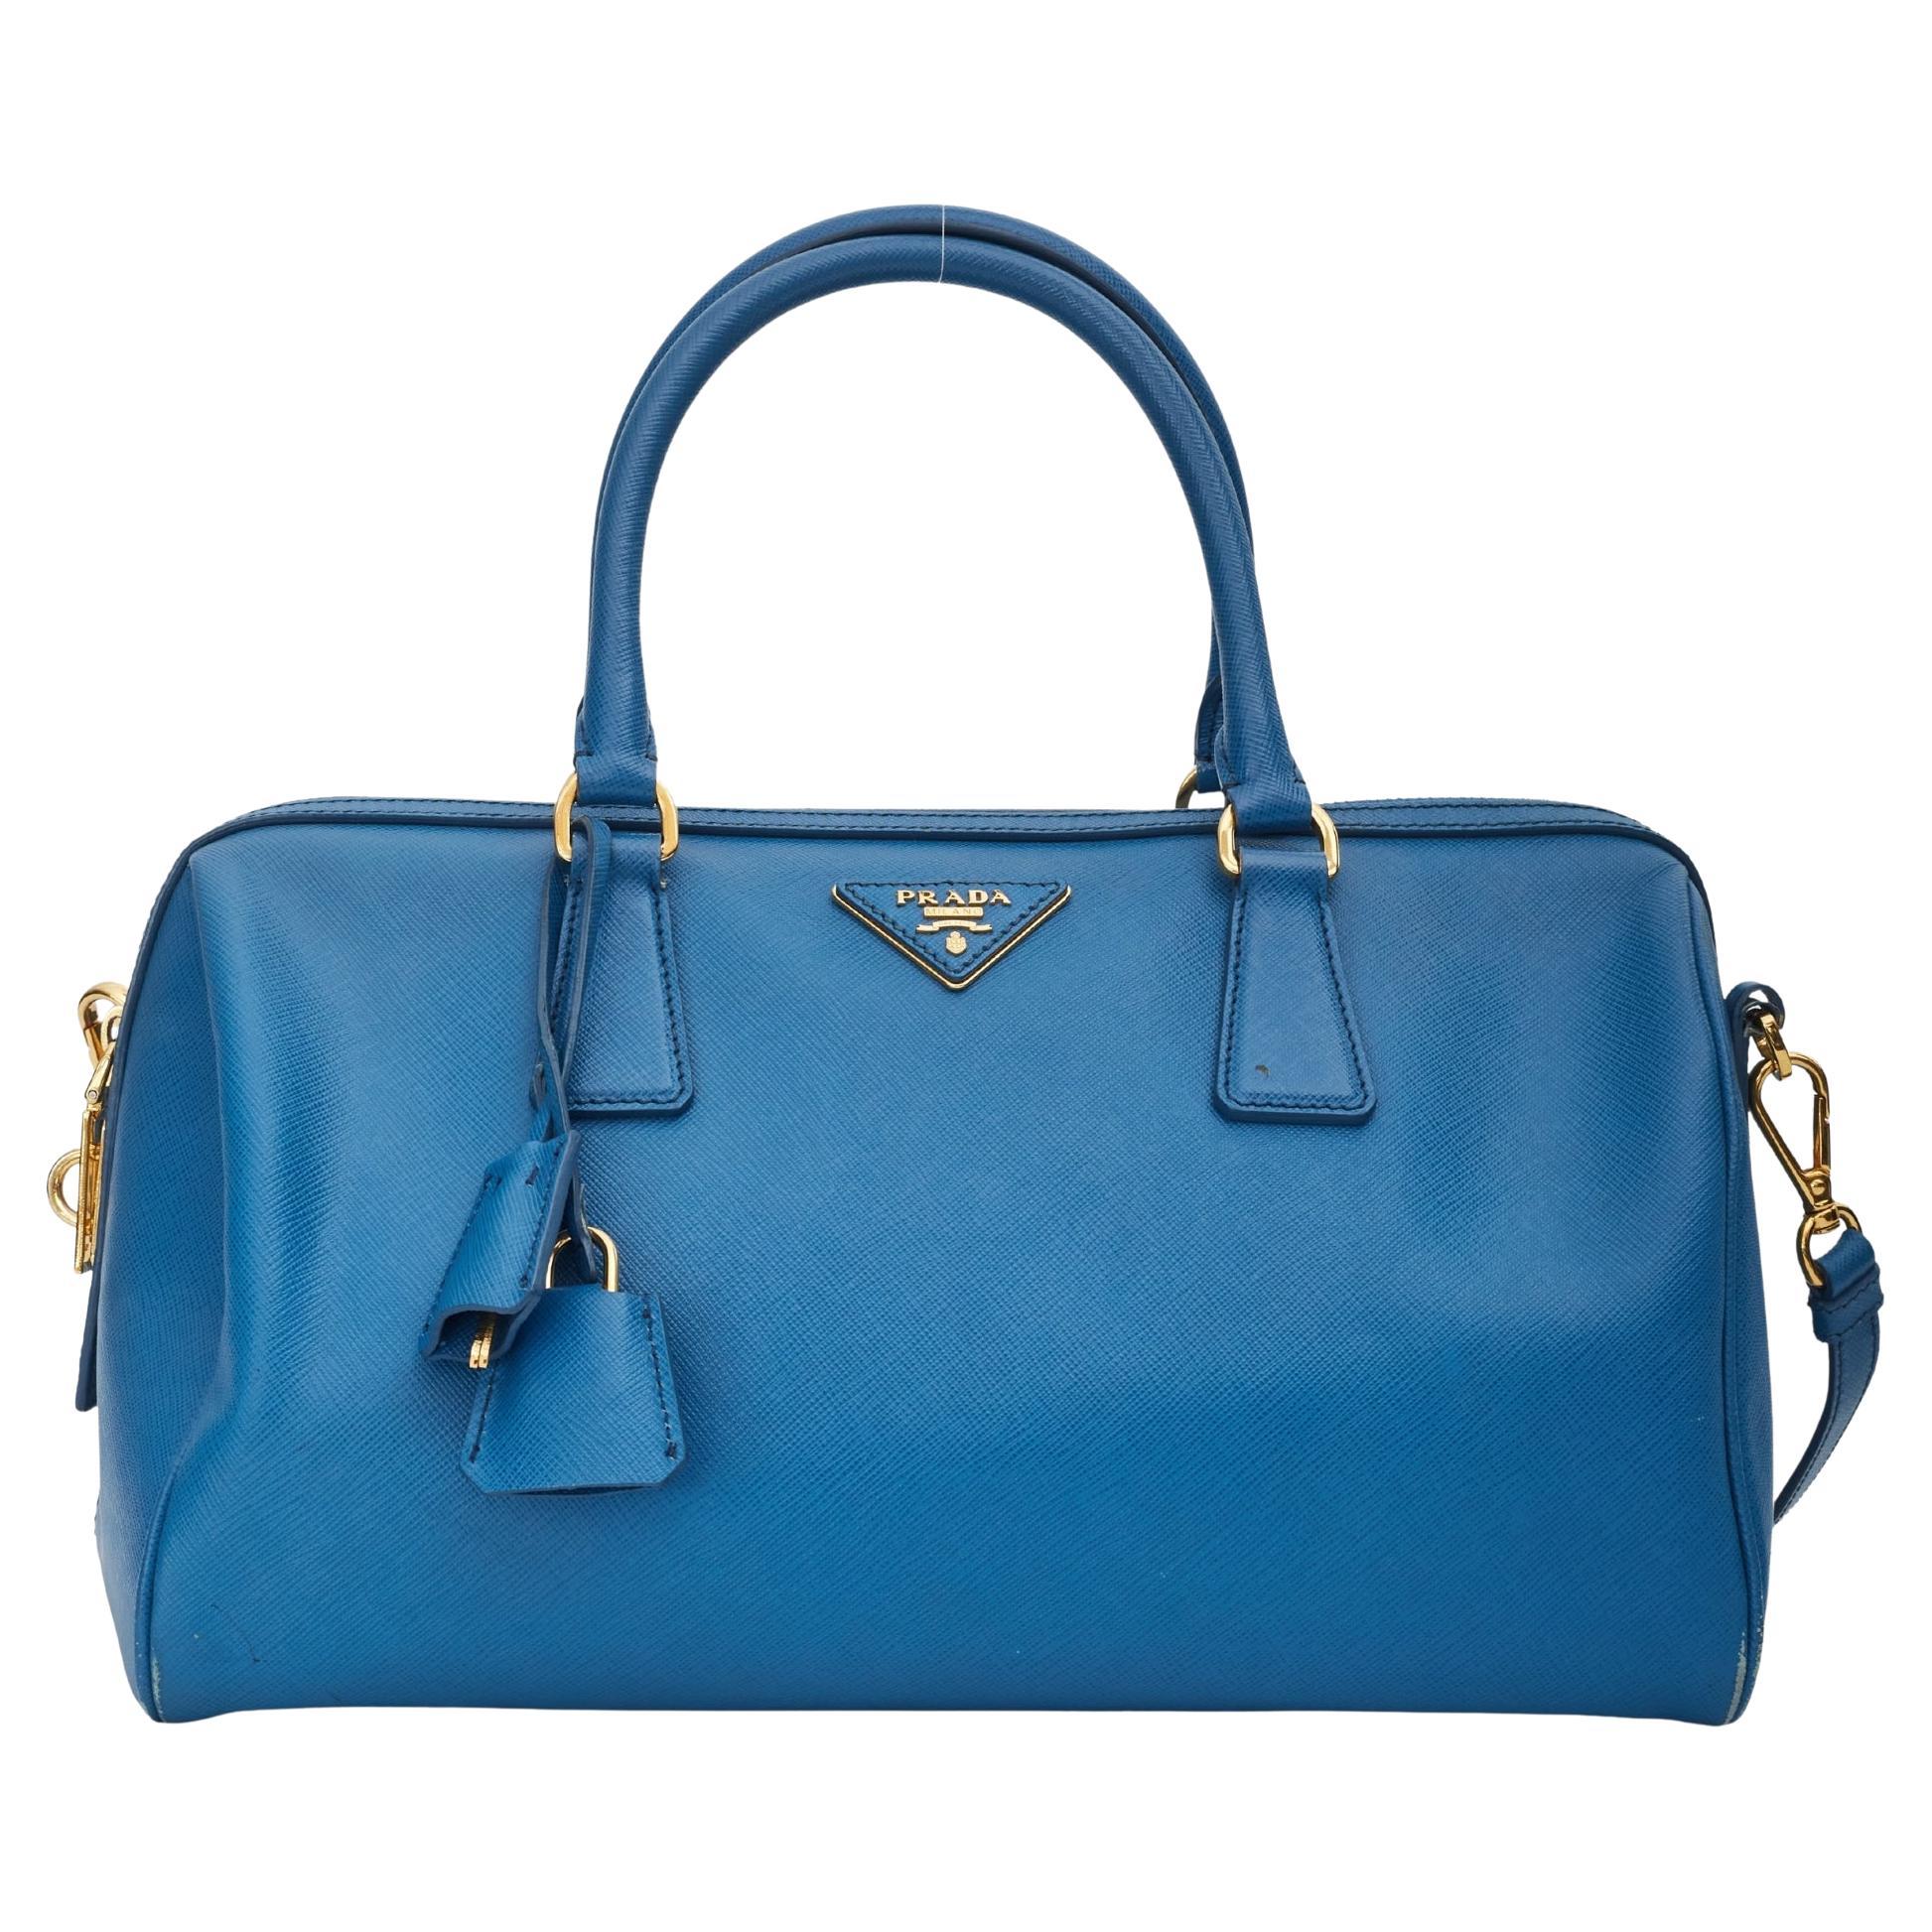 Prada Saffiano Leather Blue Bauletto Boston Bag Round For Sale